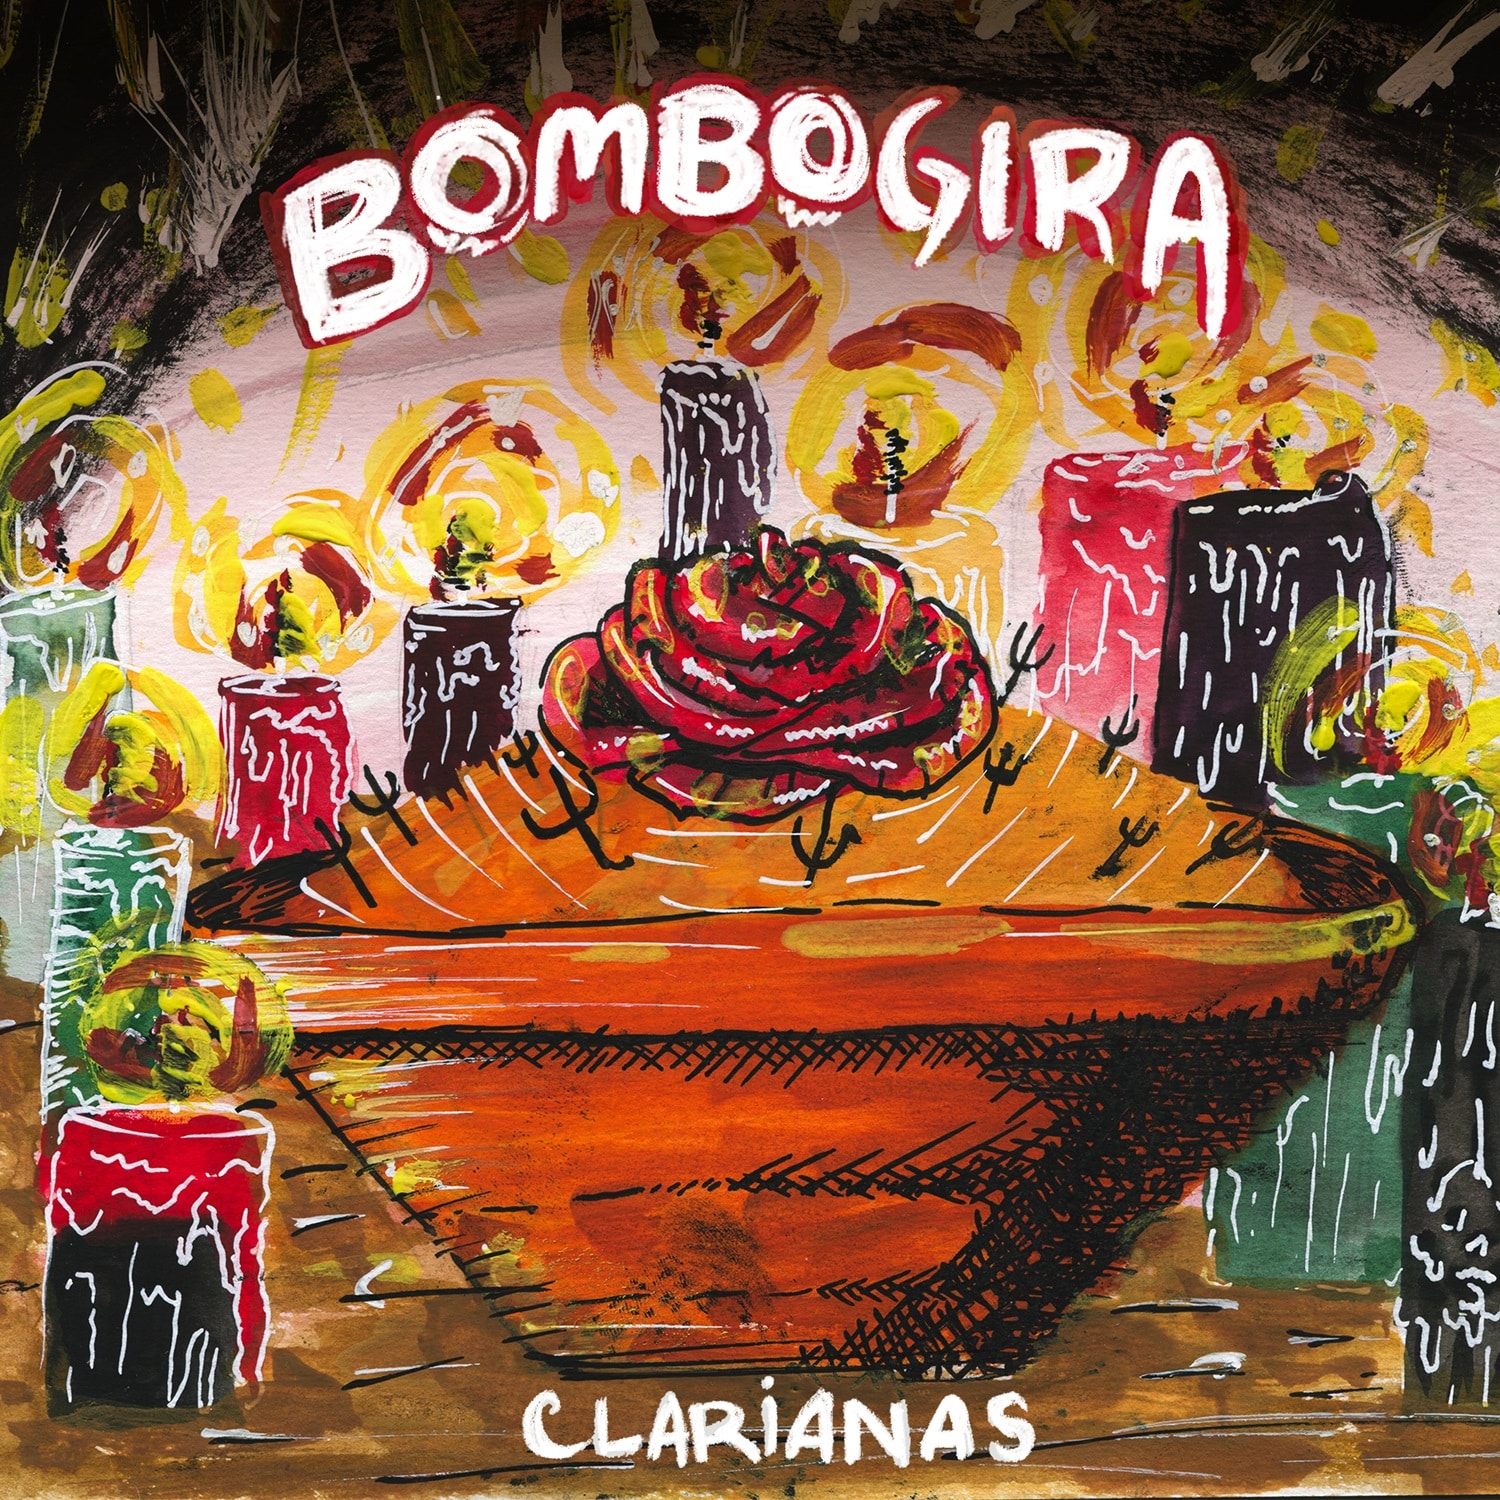 revistaprosaversoearte.com - Clarianas lança single “Bombogira” e anuncia álbum com pesquisa das raízes musicais afro-brasileiras